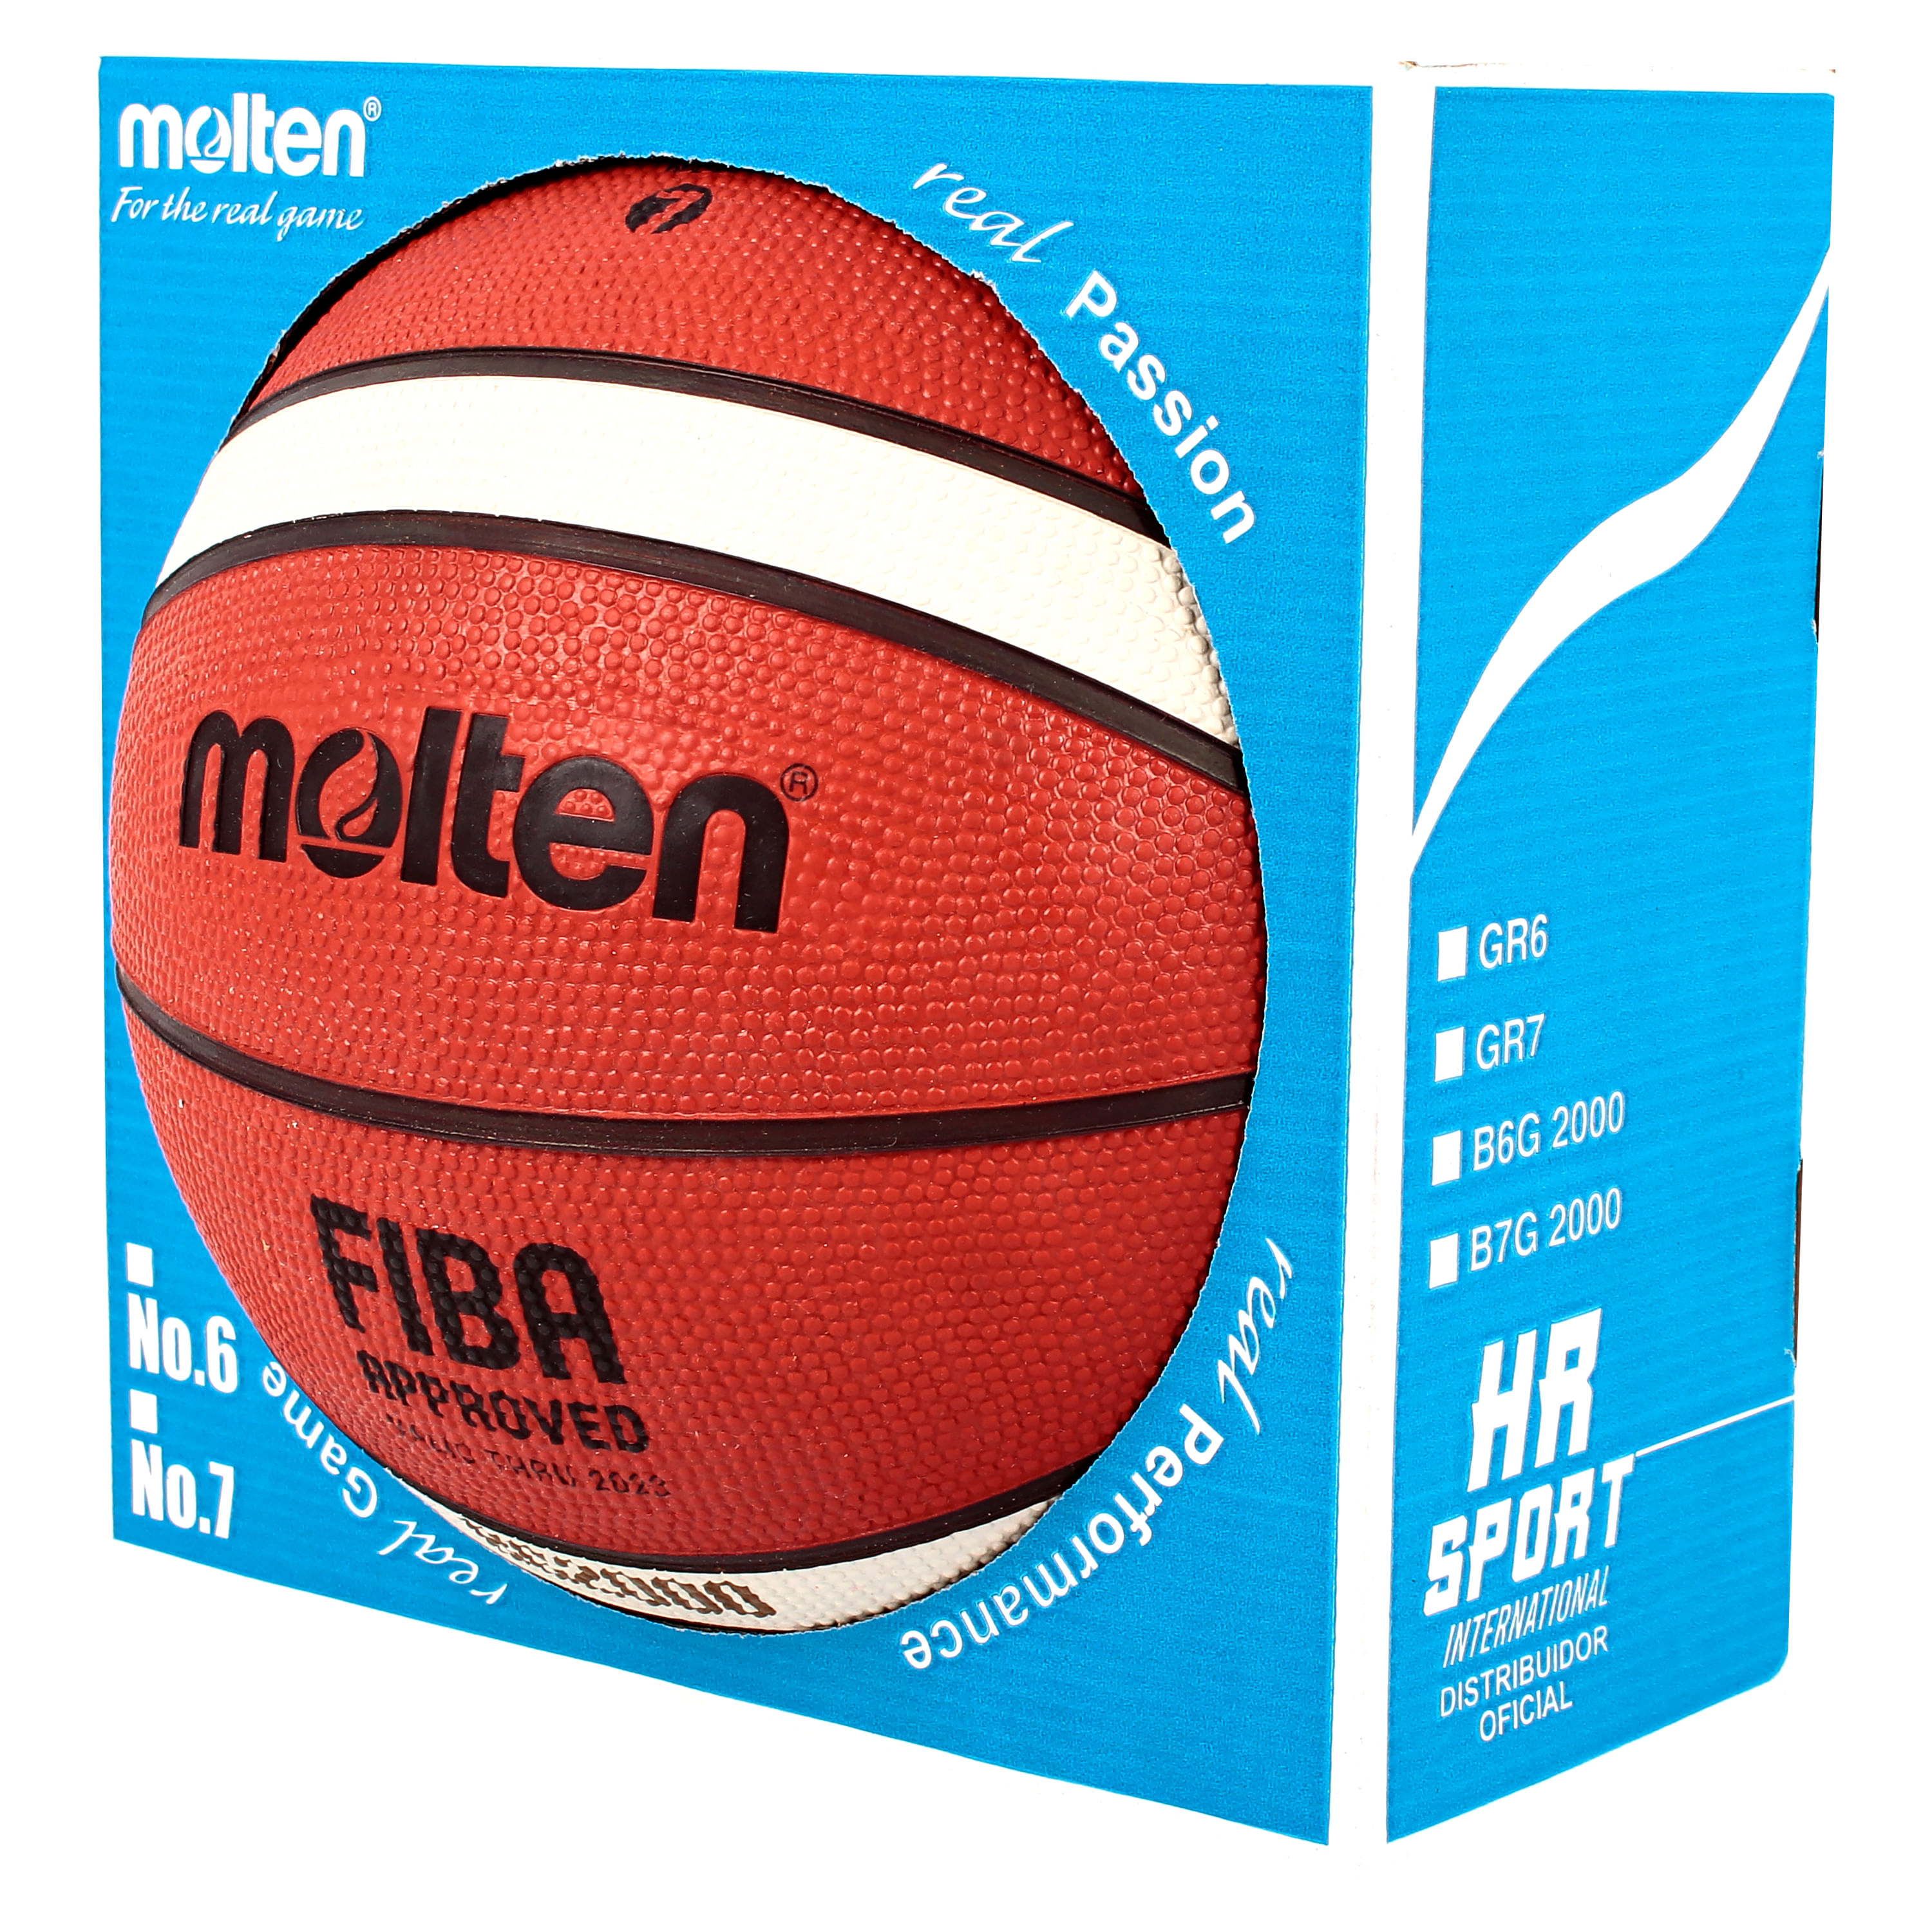 Comprar Balon Baloncesto Molten Gr7